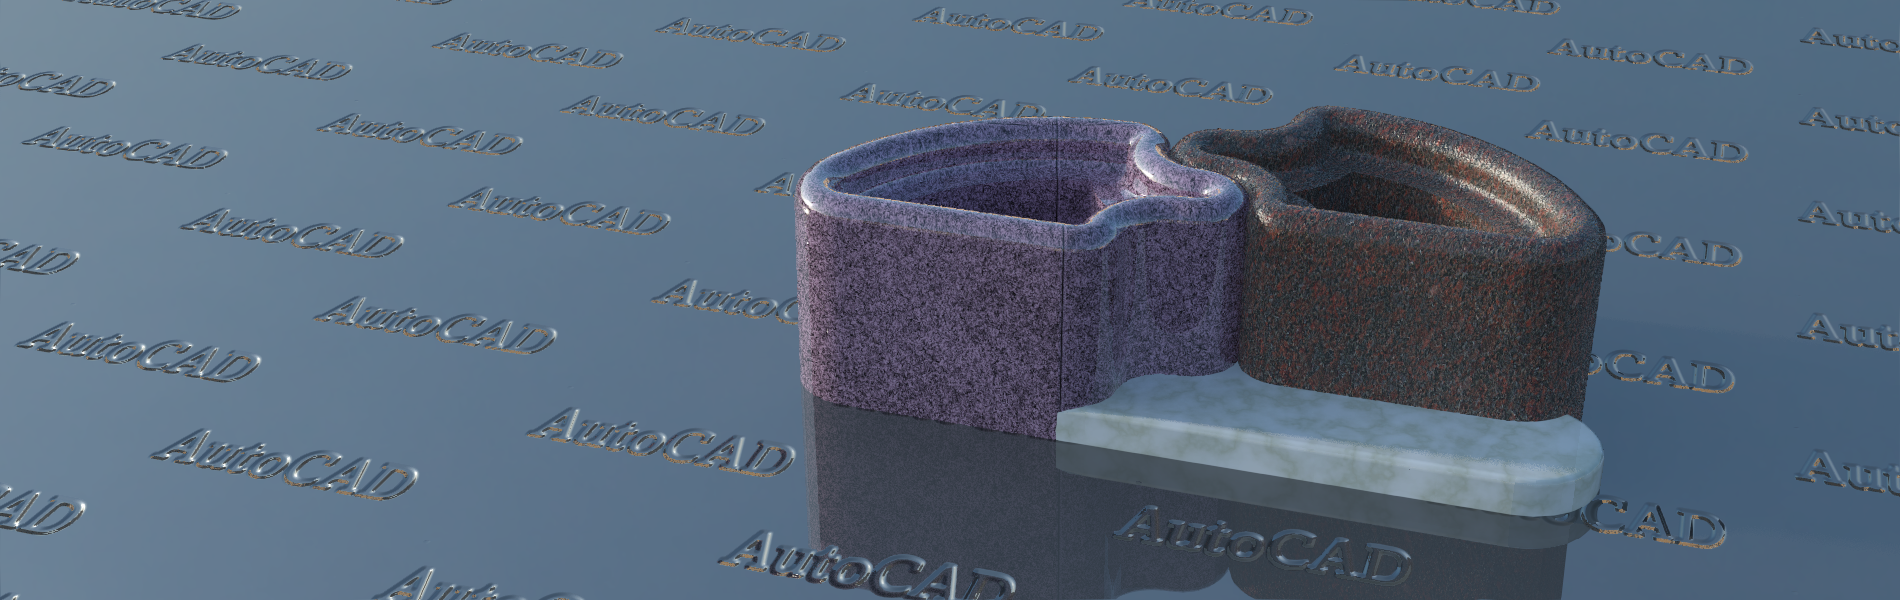 Corso di AutoCAD - lezioni 3D modellazione e render